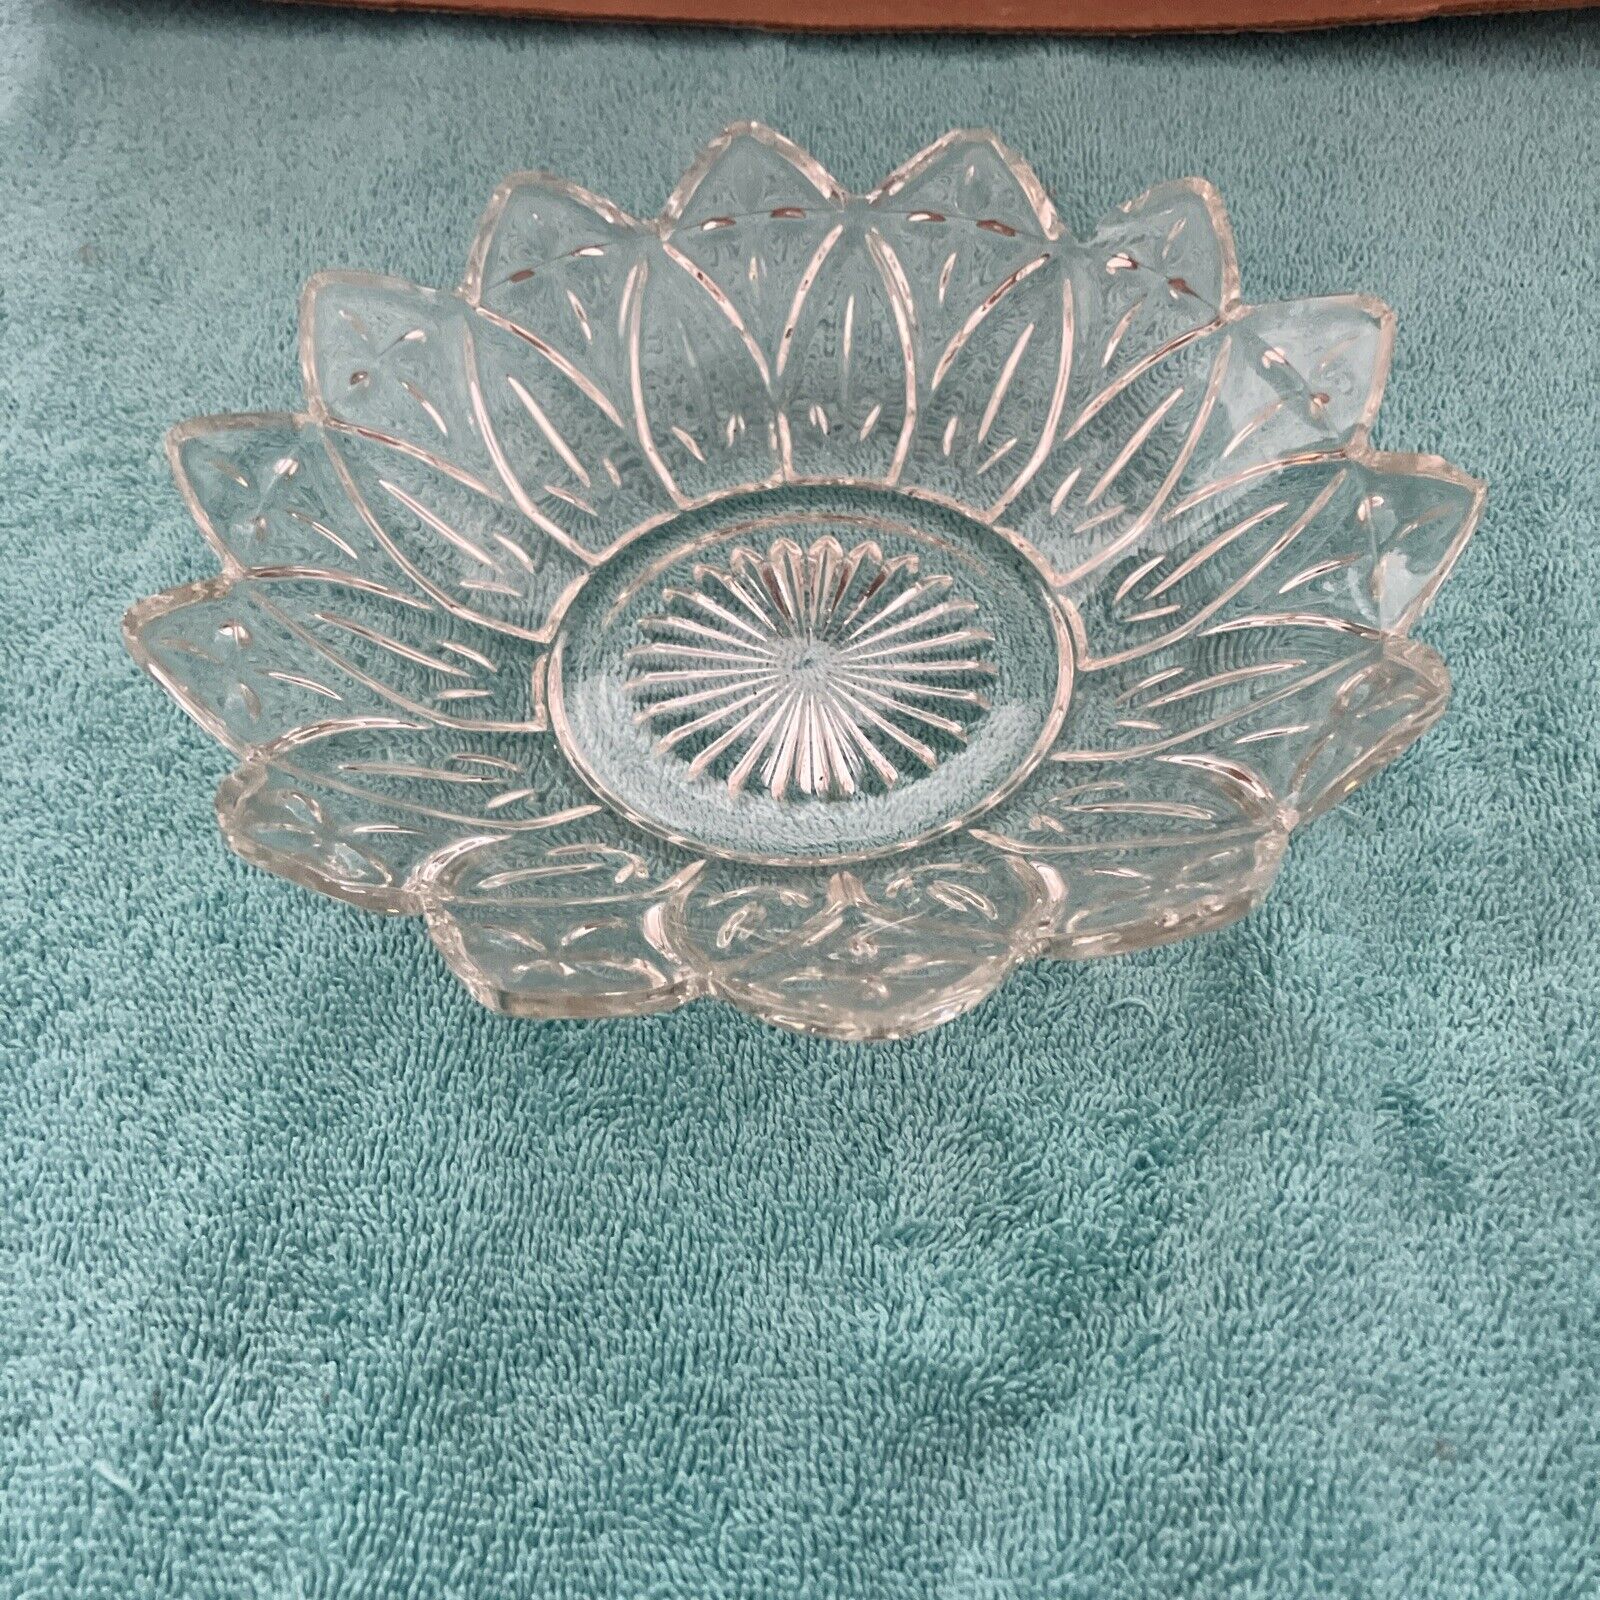  Vintage Clear Cut Glass Bowl Flower Petal Design 